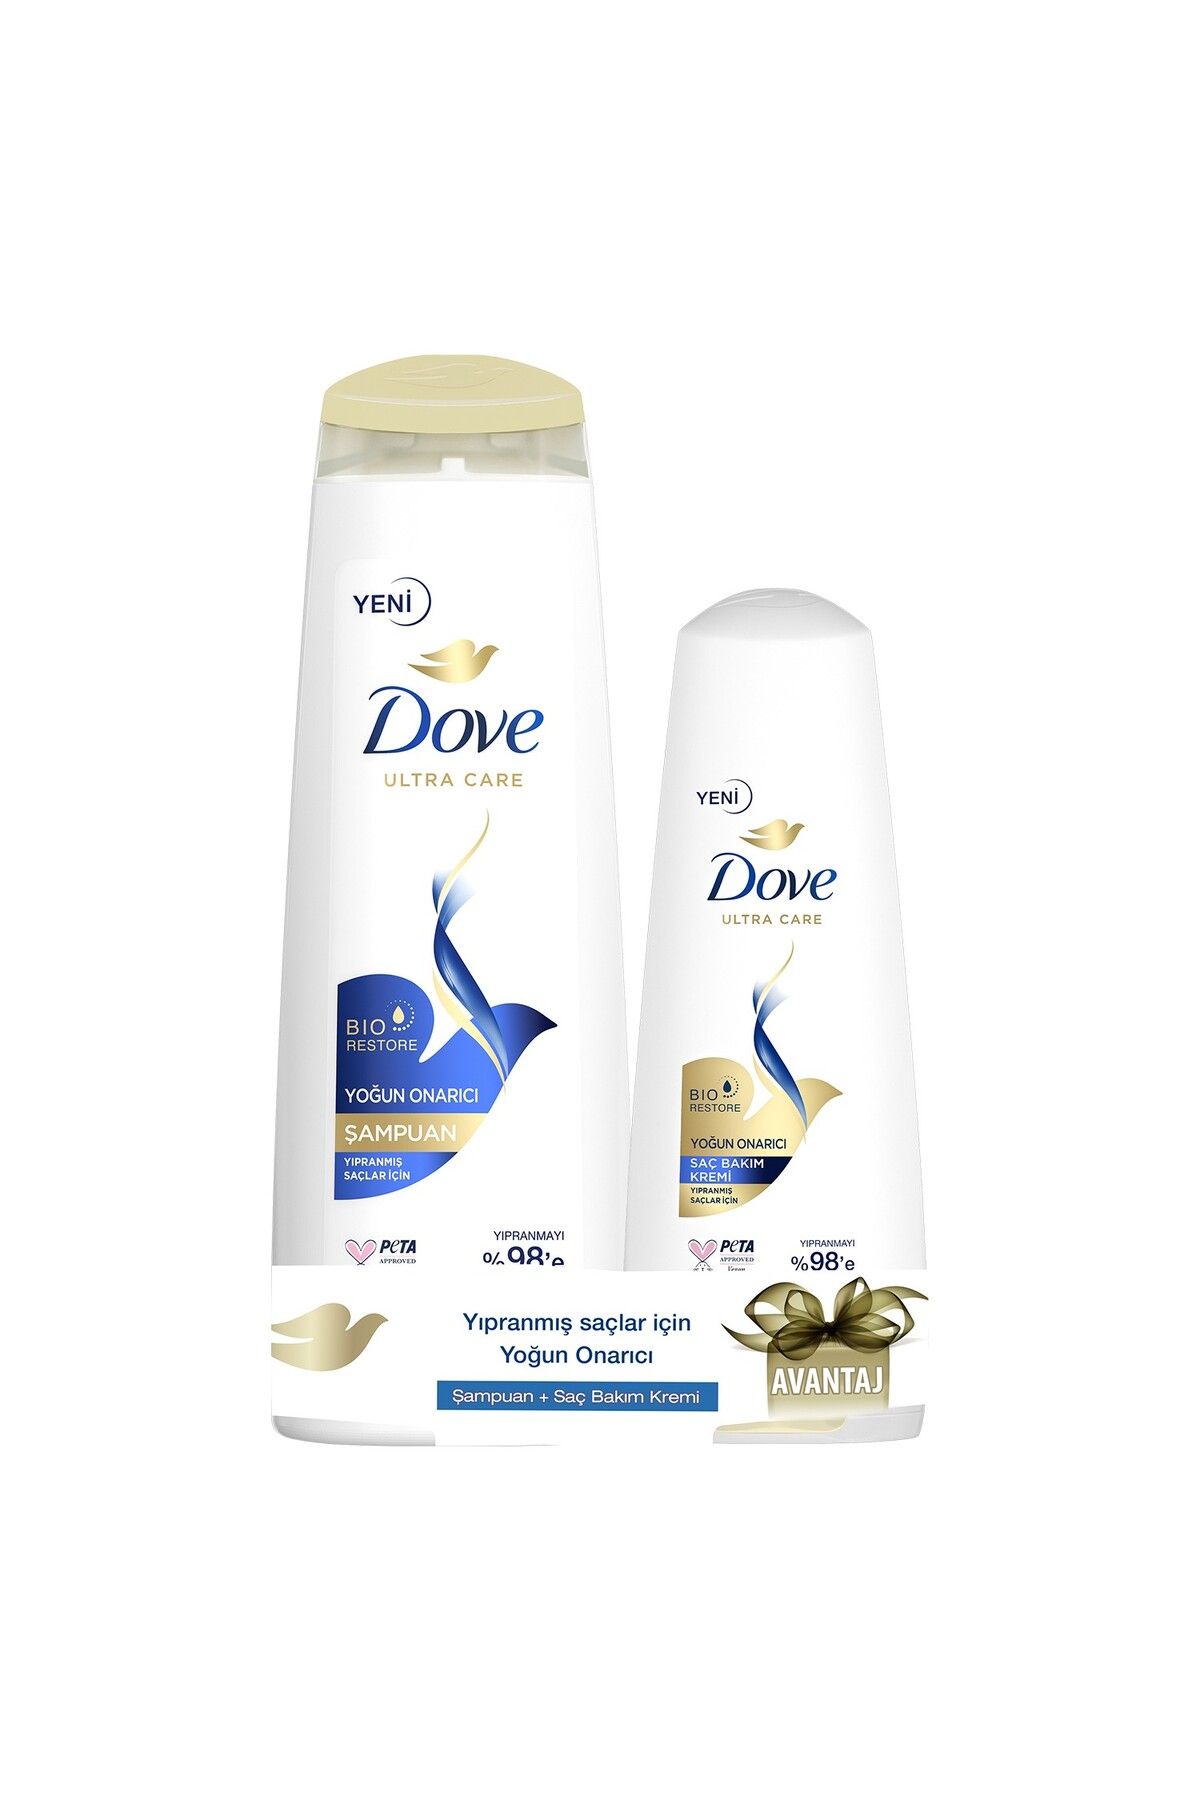 Dove Saç Bakım Şampuanı Yoğun Onarıcı Yıpranmış Saçlar Için 400 ml Saç Bakım Kremi 200 ml